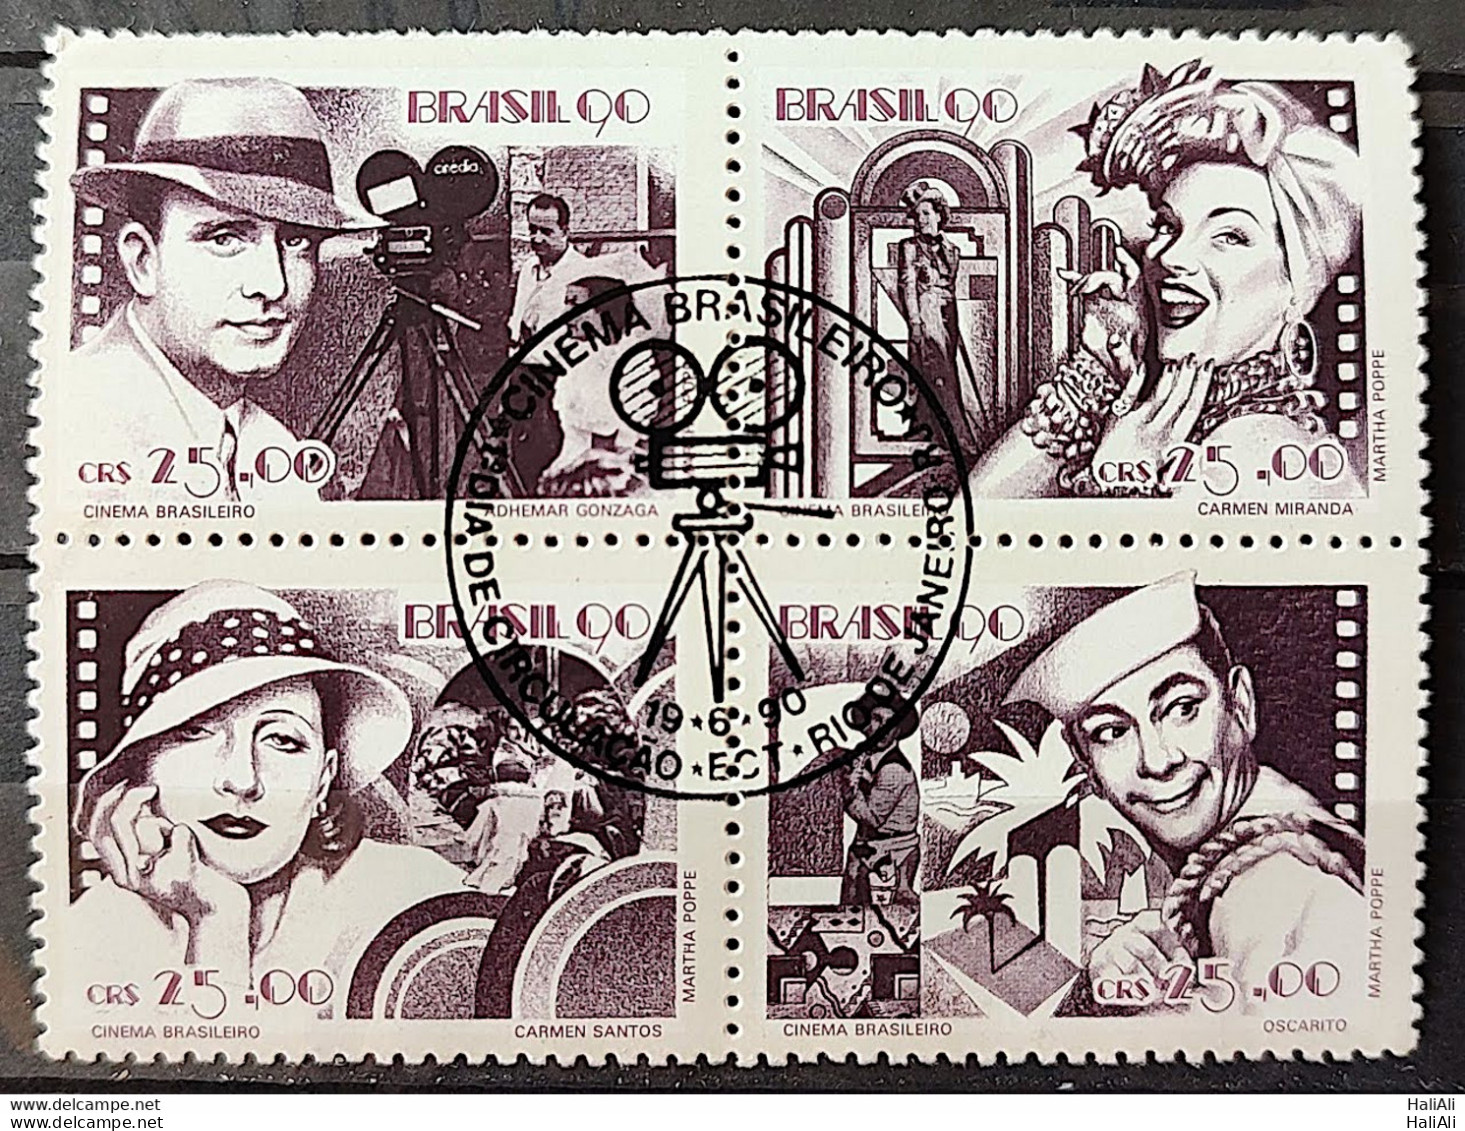 C 1687 Brazil Stamp Brazilian Cinema Gonzaga Carmen Miranda Occarito 1990 Complete Series CBC RJ - Nuovi